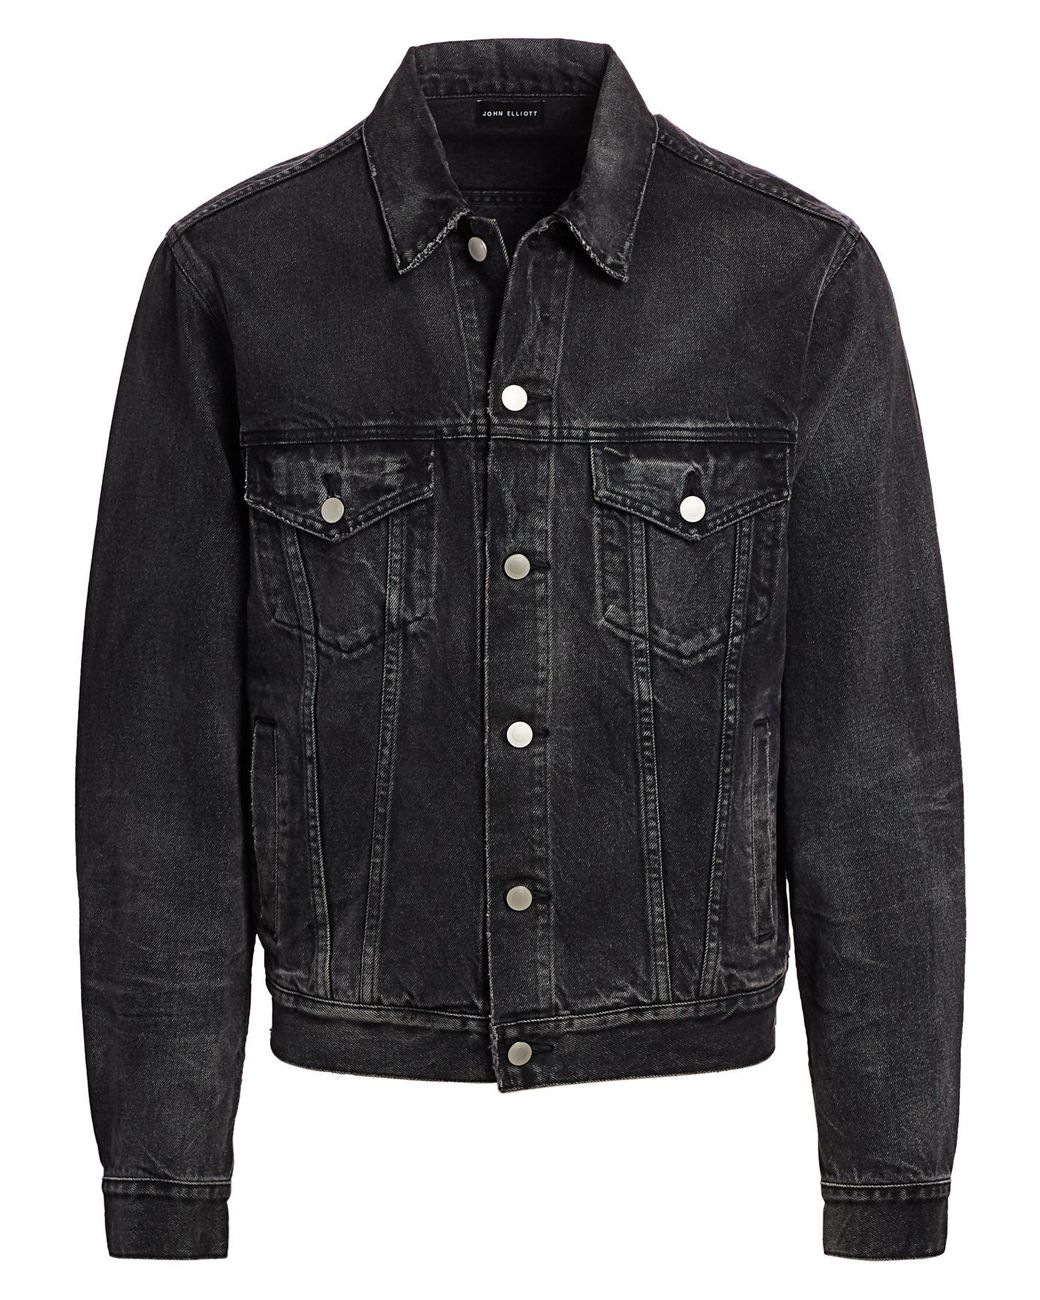 John Elliott Thumper Type Ii Denim Jacket in Black for Men - Save 41% ...